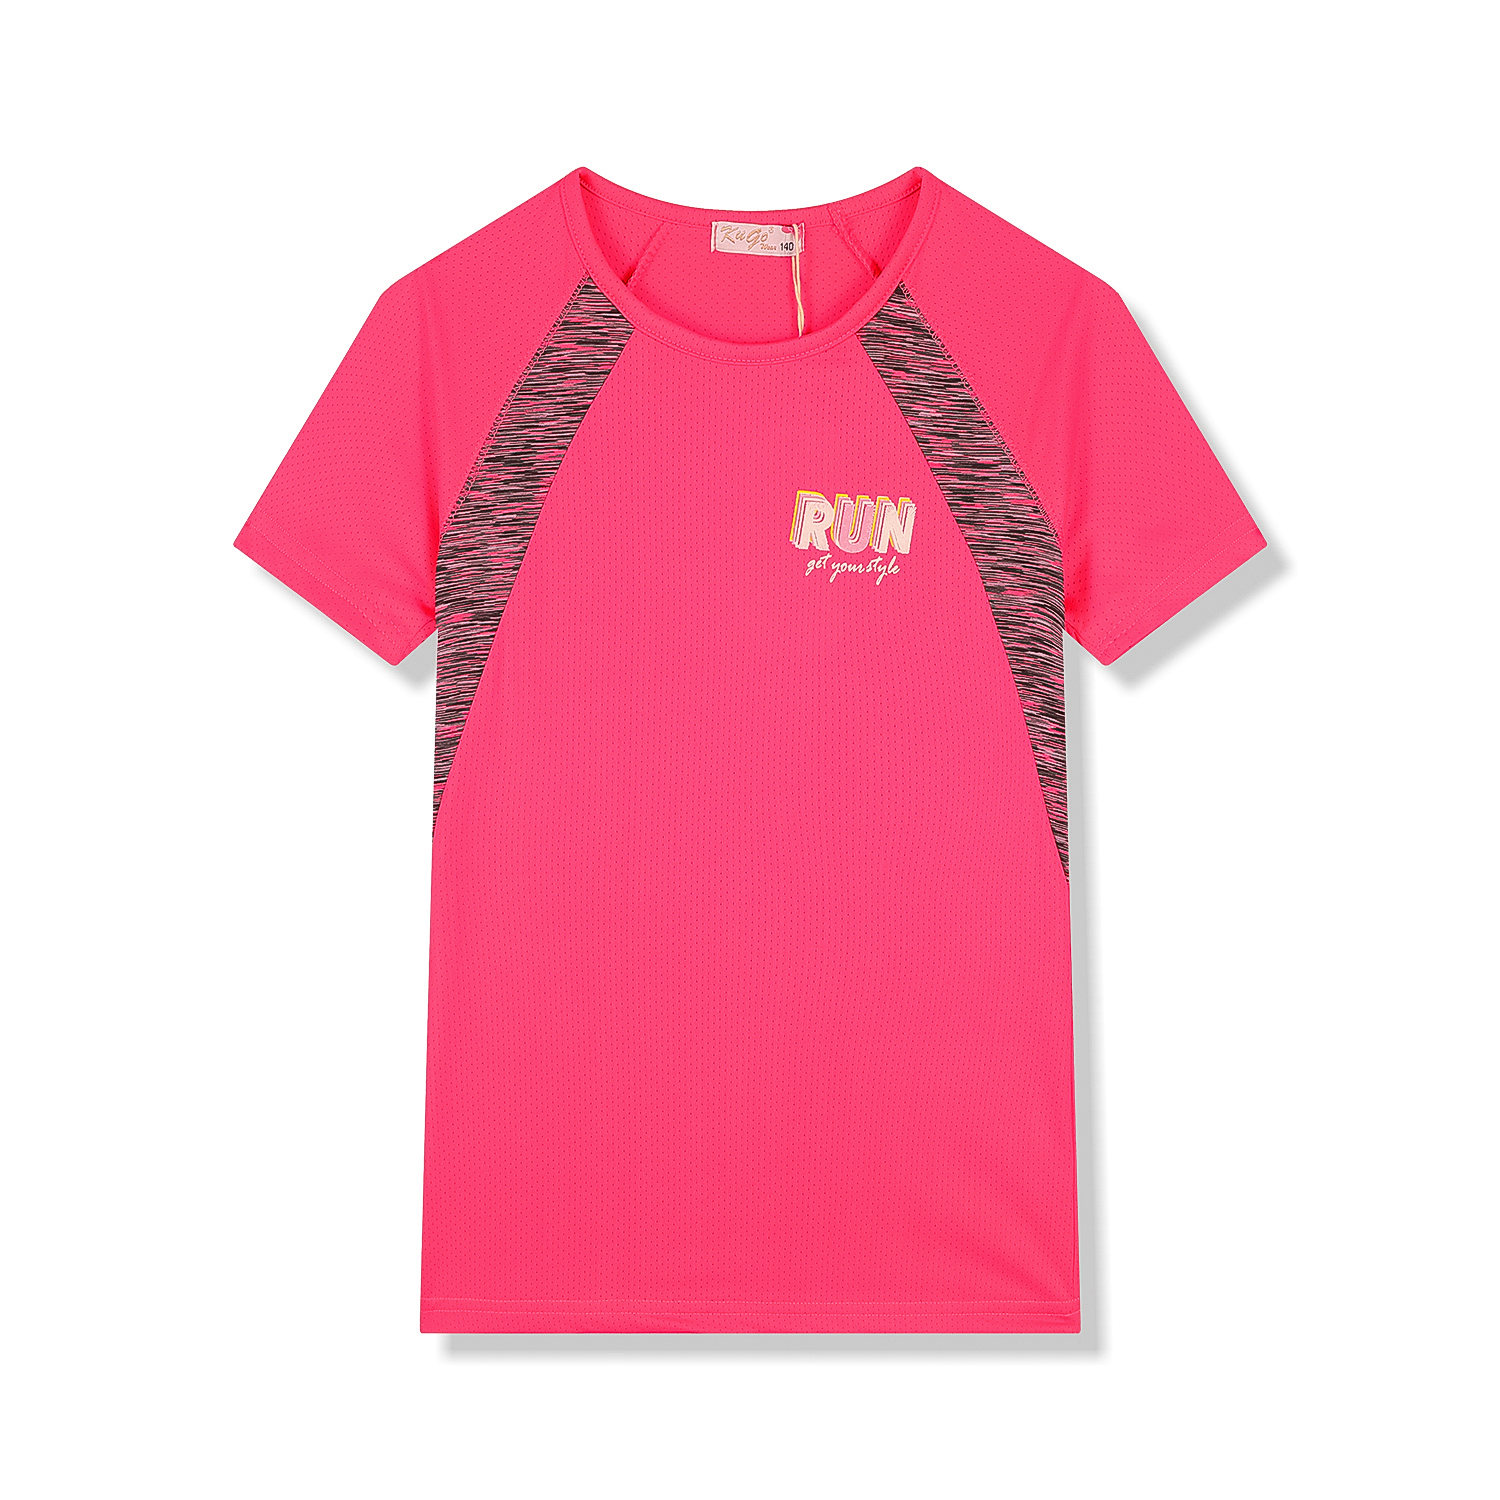 Dívčí funkční tričko - KUGO FC6756, sytě růžová Barva: Růžová, Velikost: 164